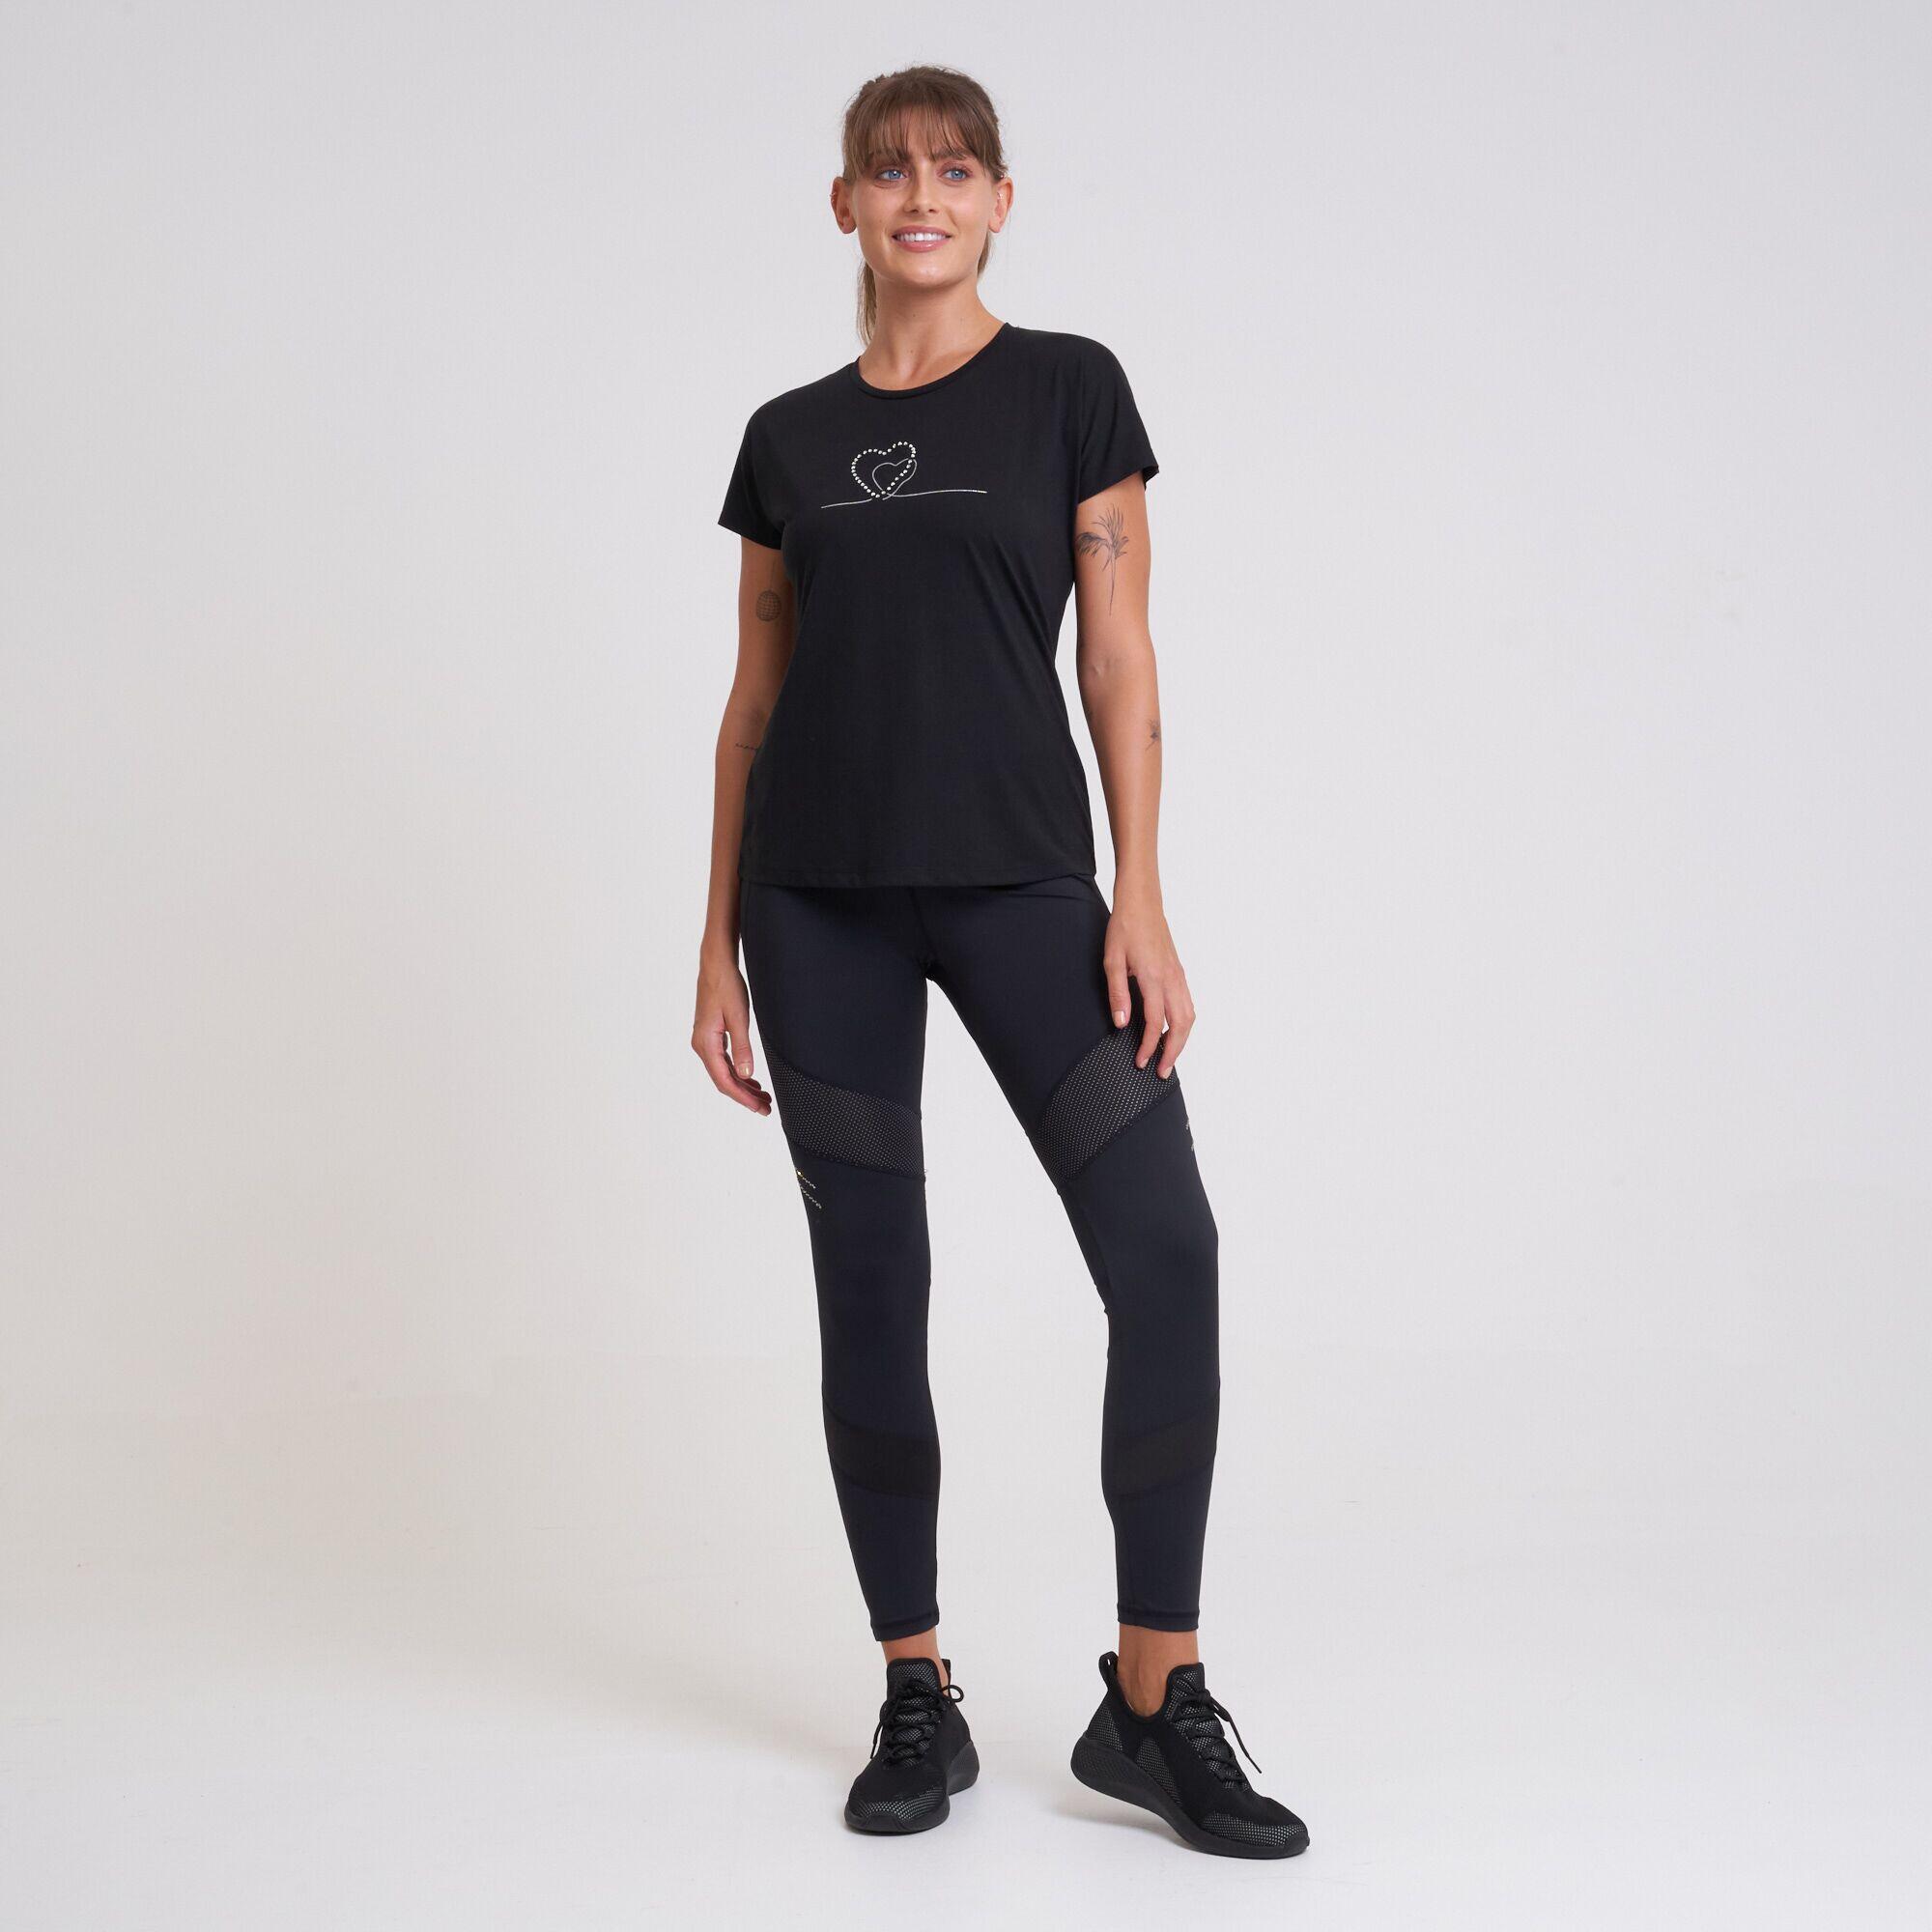 Crystallize Women's Fitness Short Sleeve  T-Shirt - Black 2/5